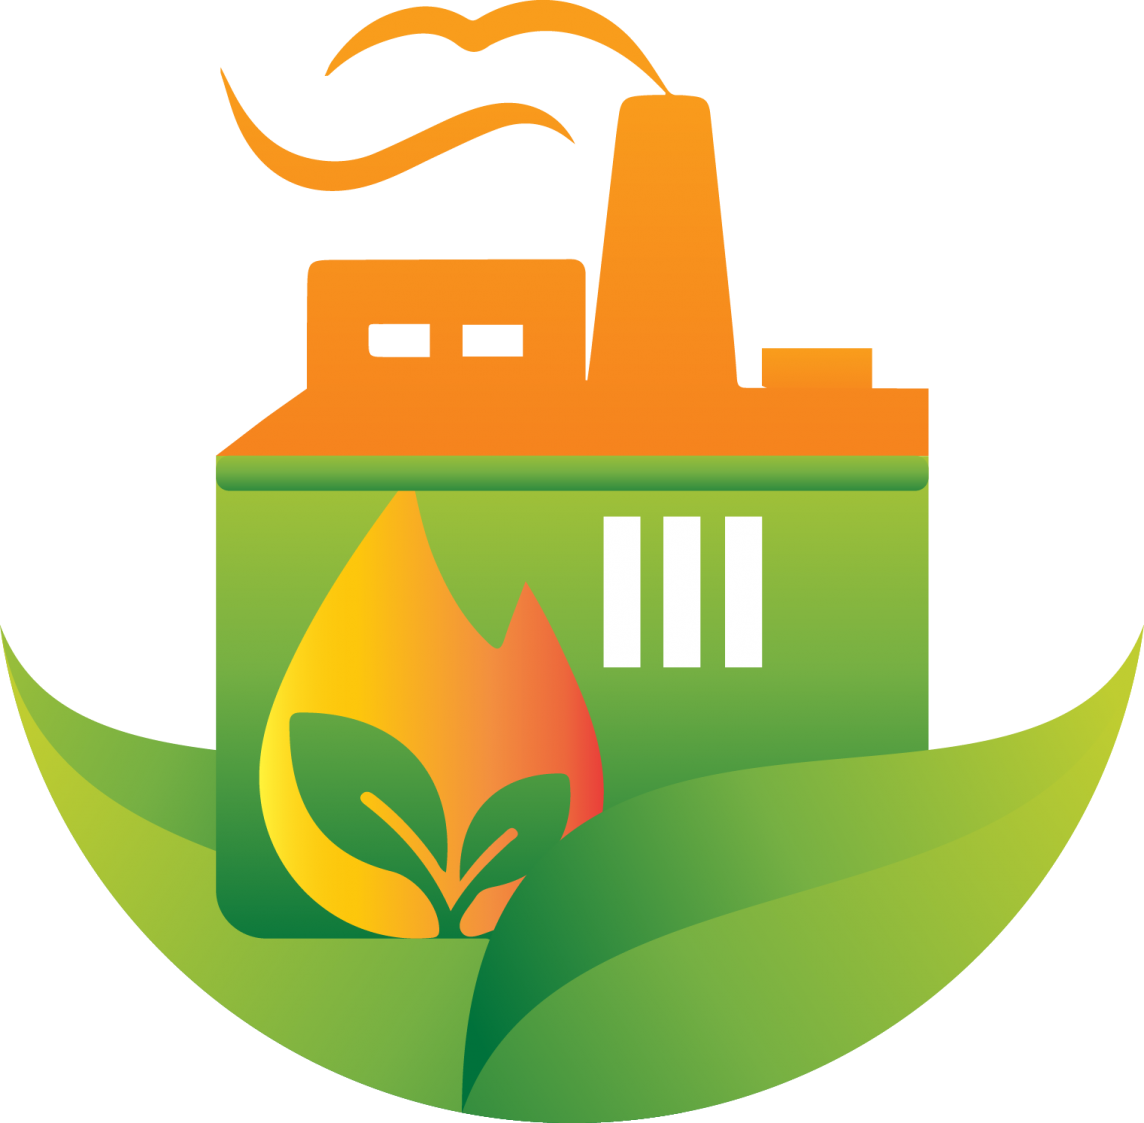 Biomass Renewable Energy Biofuel Energy Development - Biomass Renewable Energy Biofuel Energy Development (1144x1123)